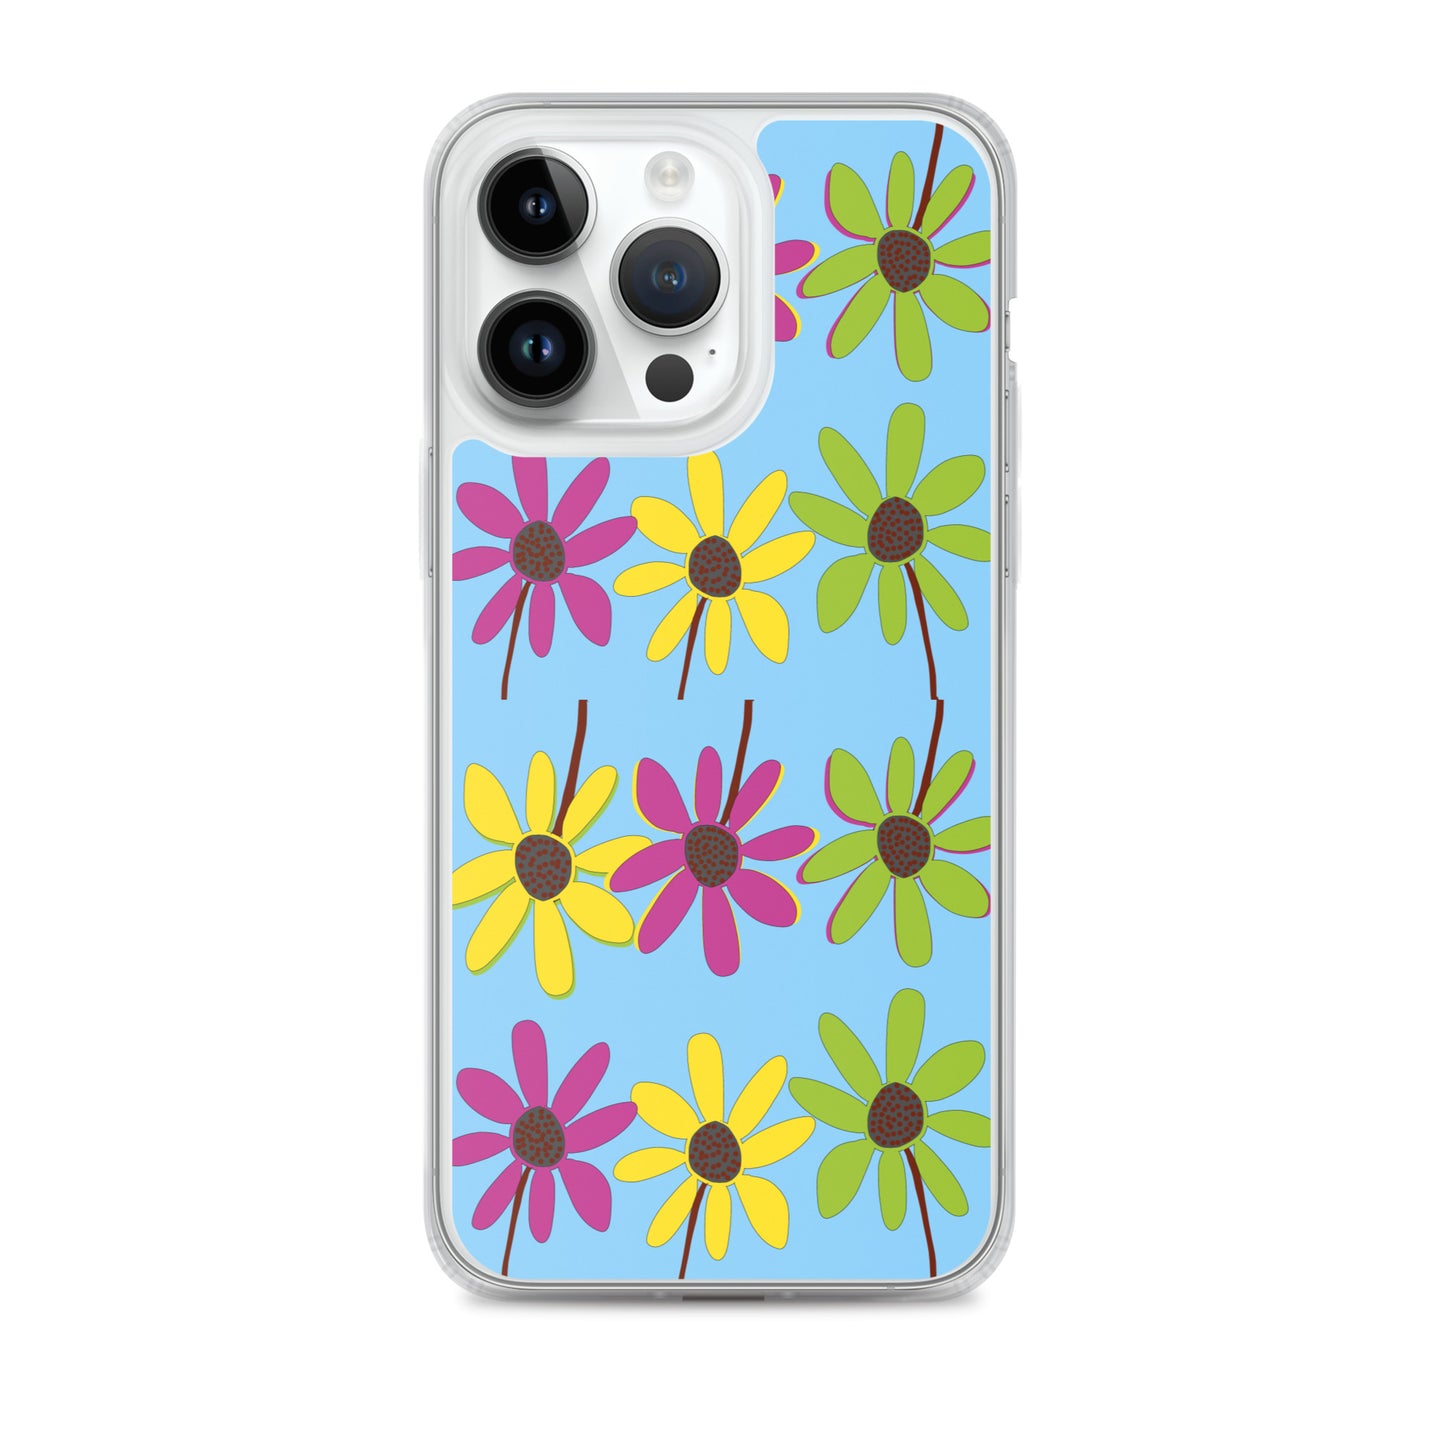 Funda para iPhone con coloridos pétalos de flores dibujados a mano, azul cielo